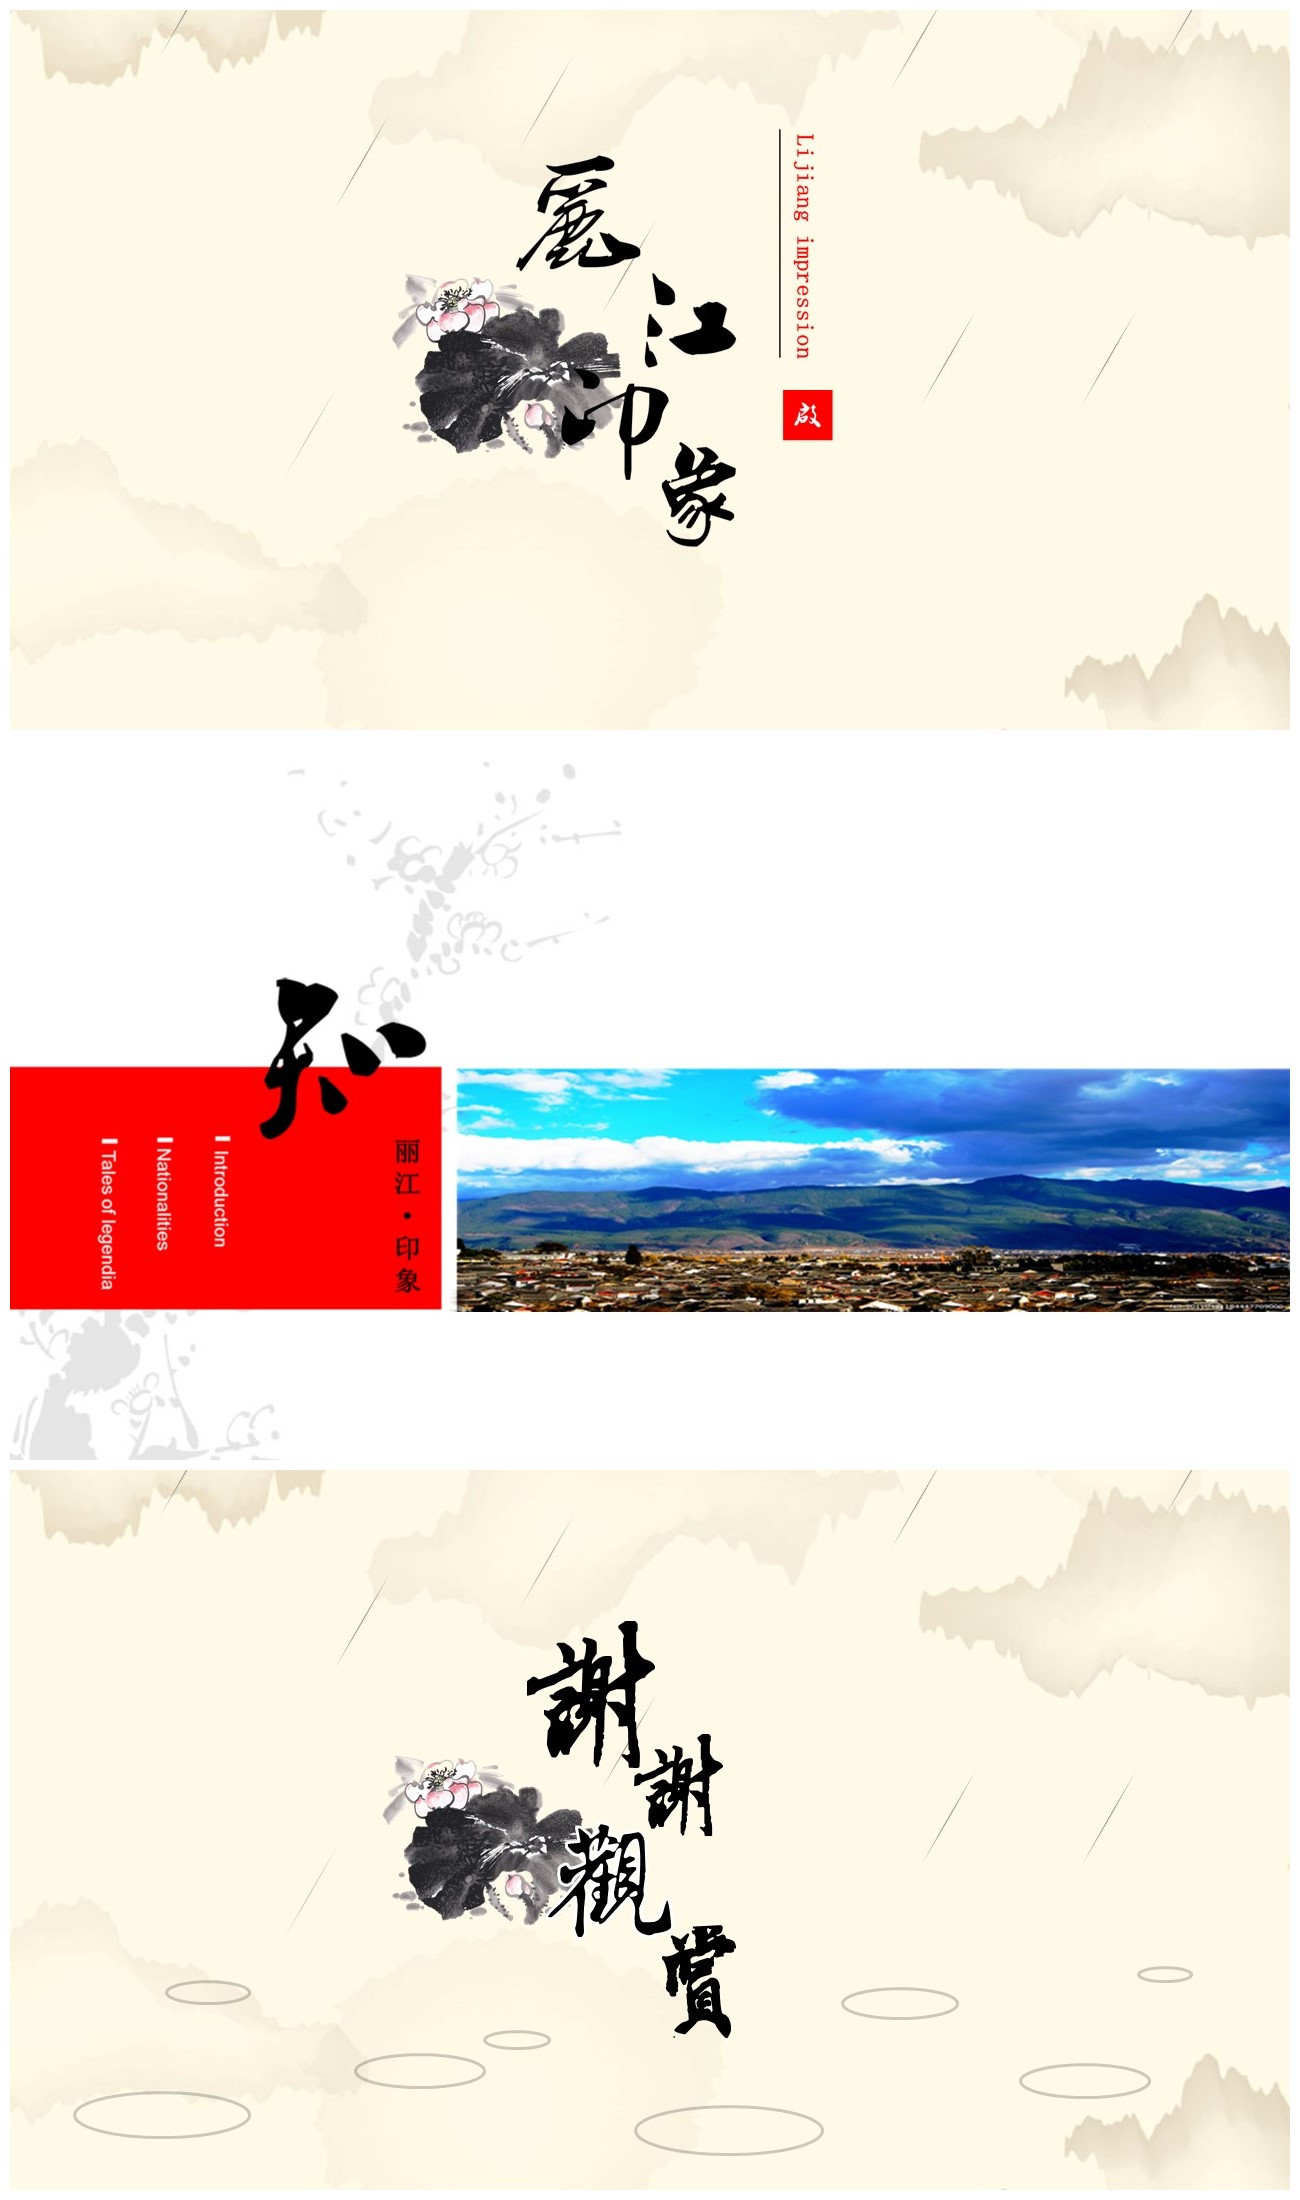 中国风背景的旅游幻灯片模板下载-聚给网